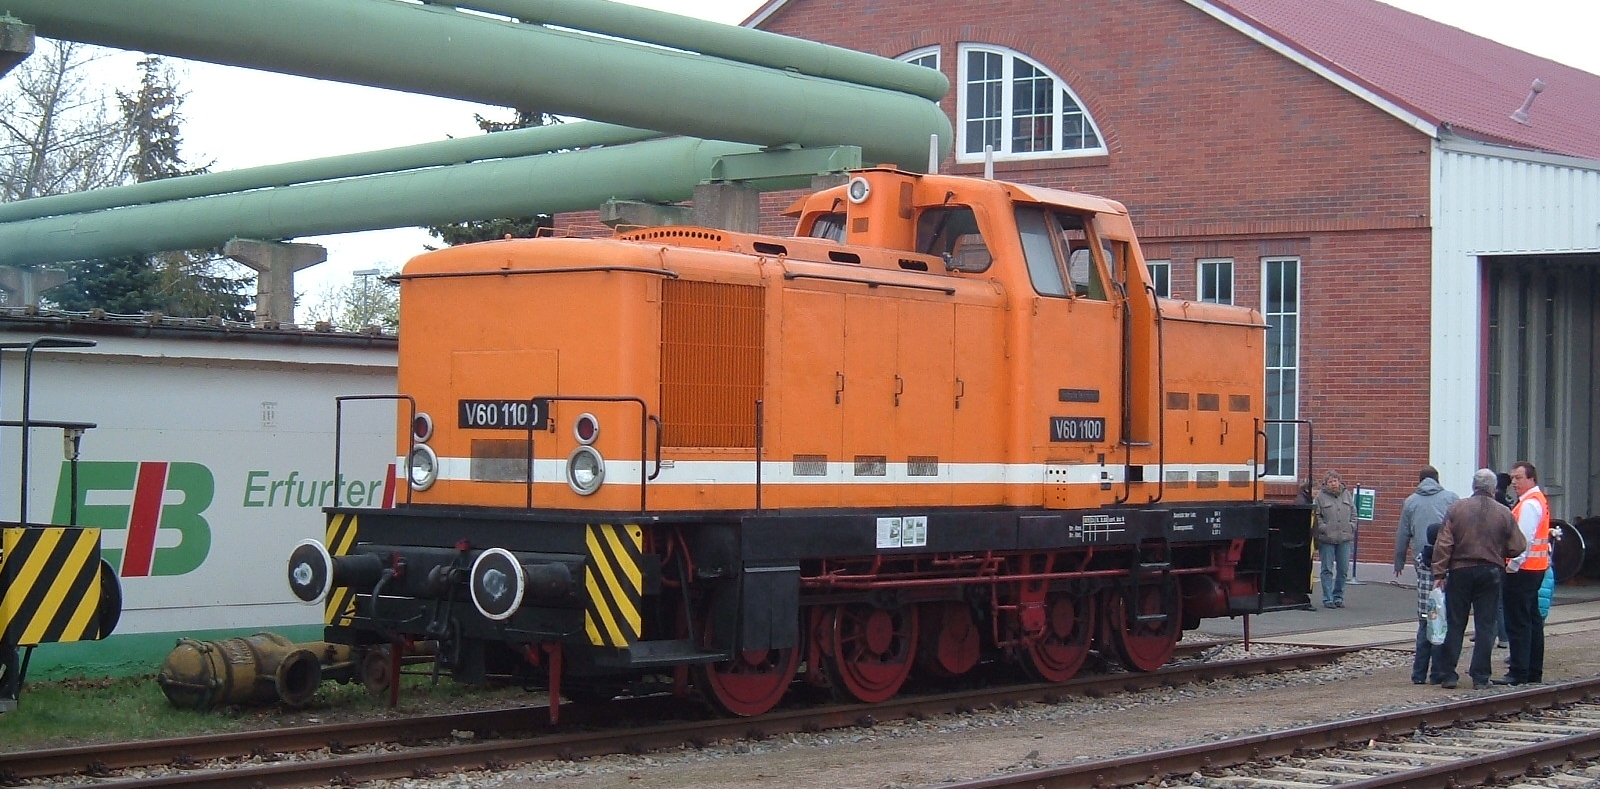 V 60 1100 of the Arnstadt Railway Museum in March 2012 in Erfurt